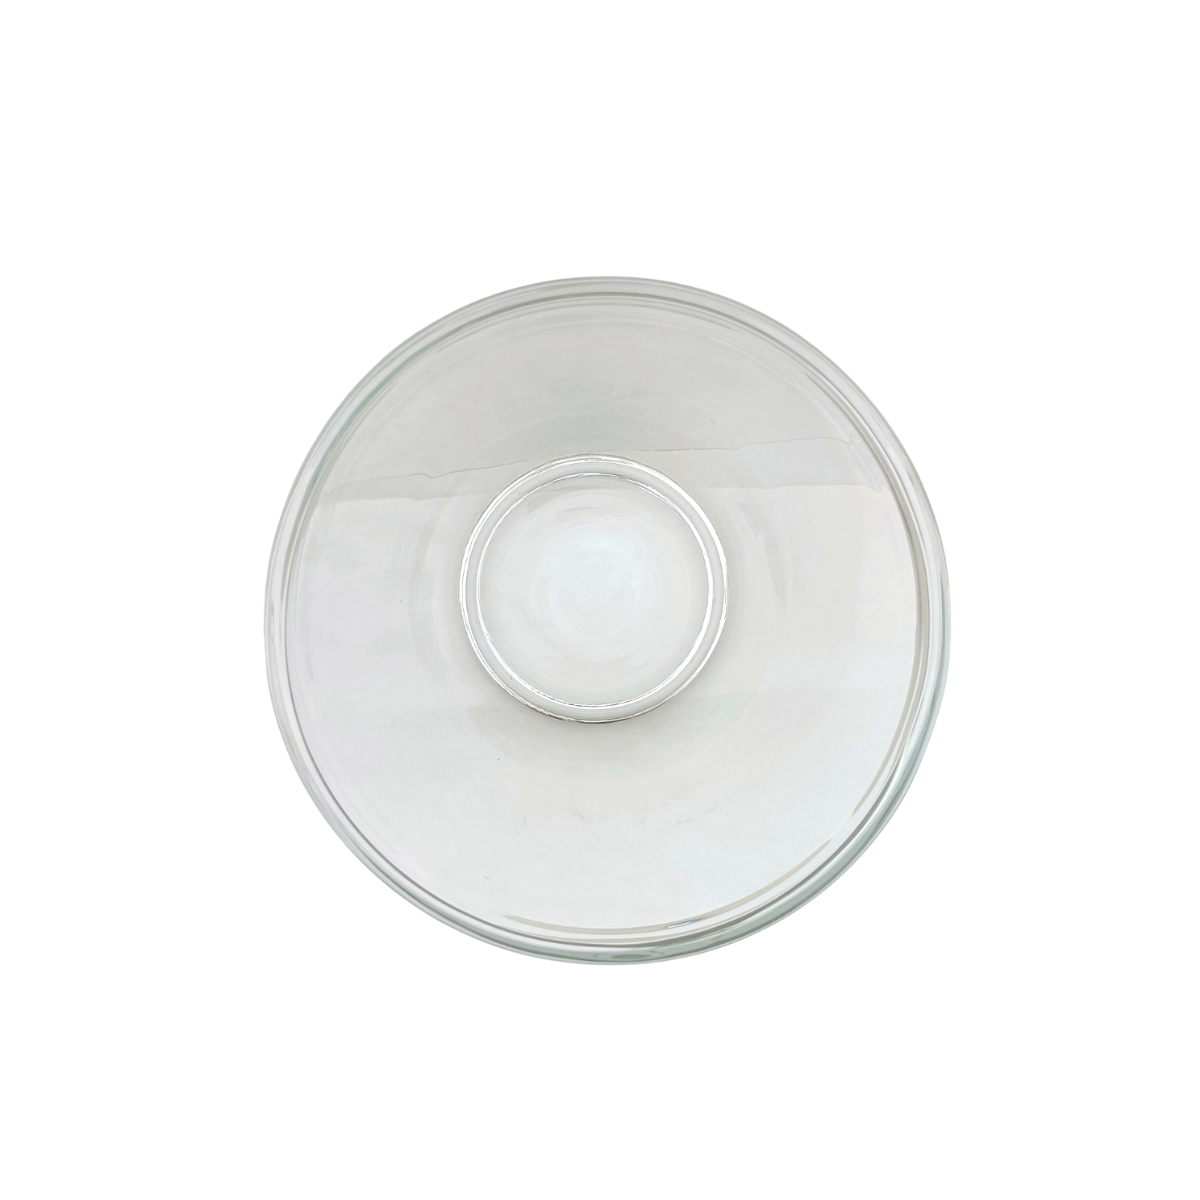 Tazon - bowl de vidrio multifuncion capaciadad de 2 Litros PYR-O-REY